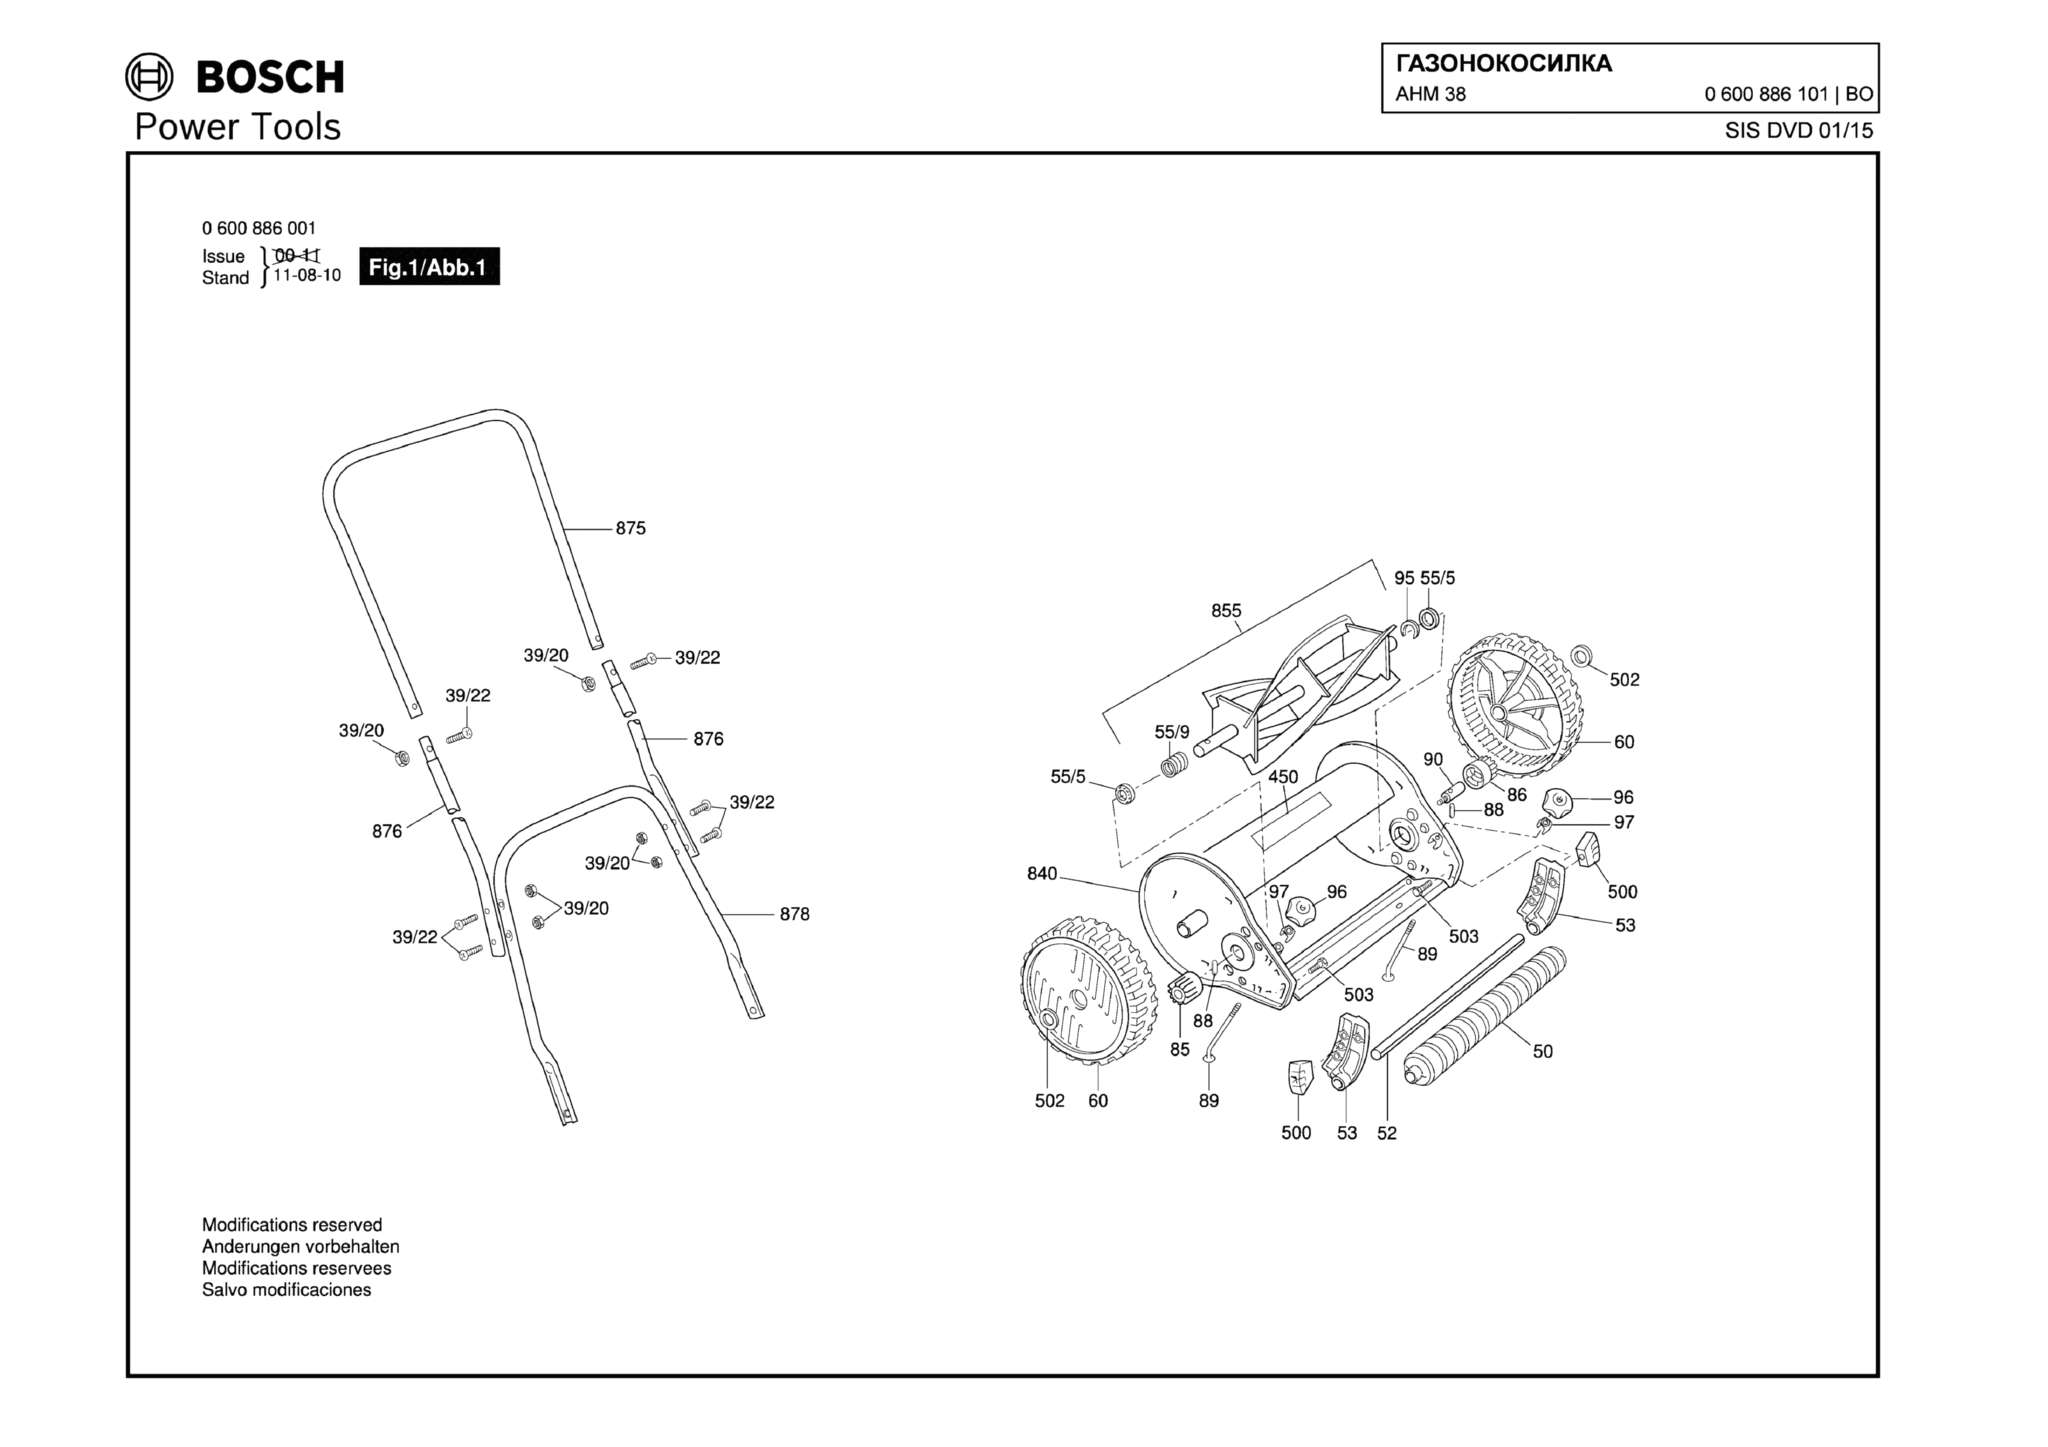 Запчасти, схема и деталировка Bosch AHM 38 (ТИП 0600886101)